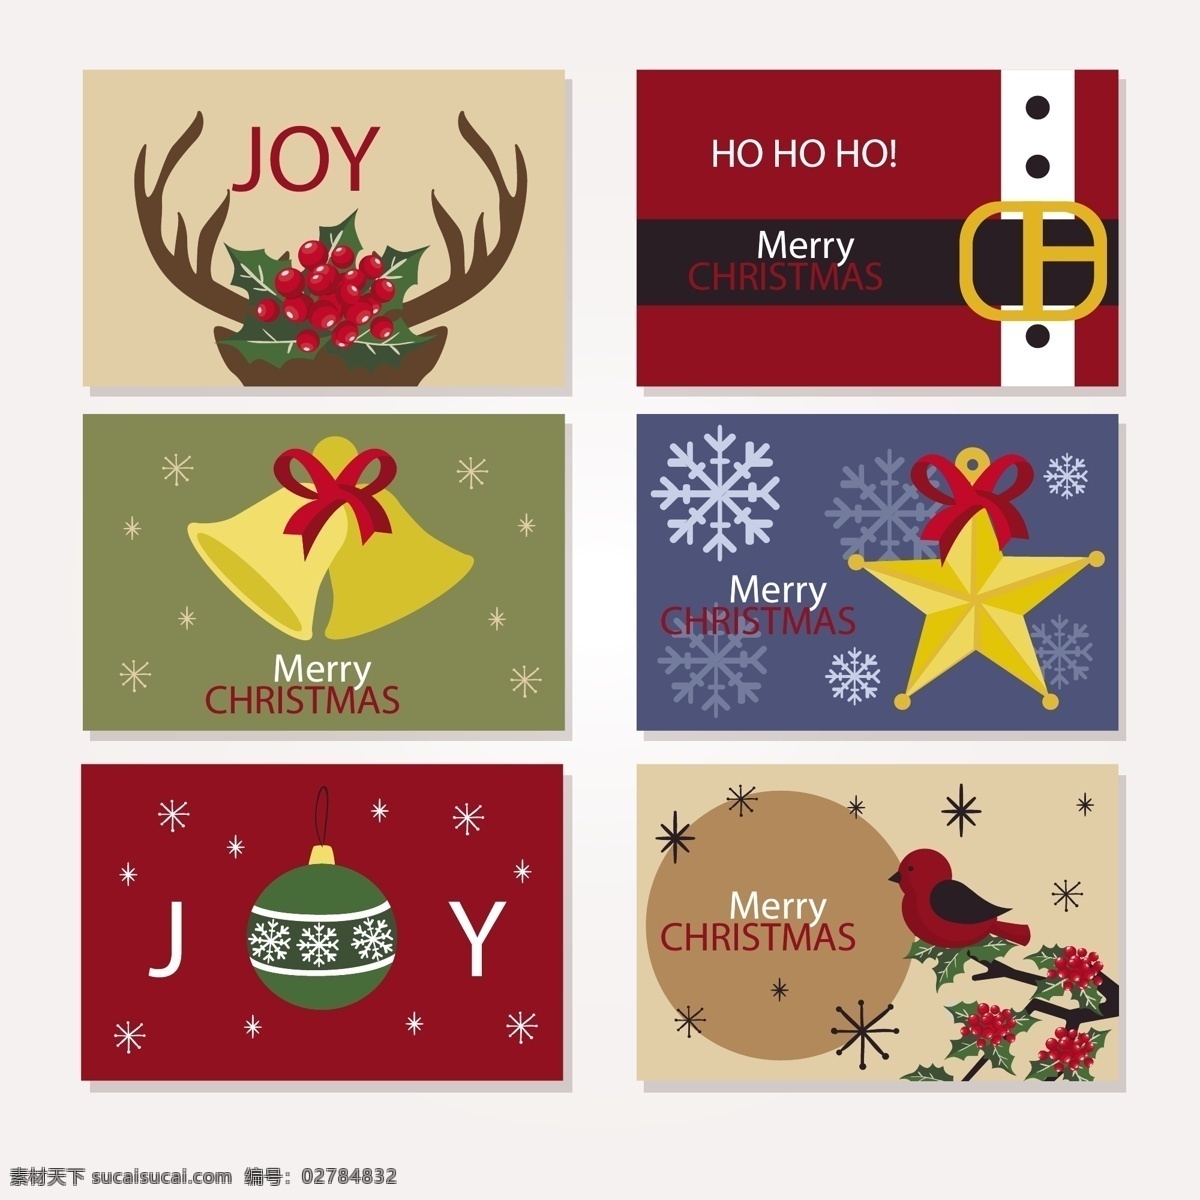 套 圣诞 卡片 2018 圣诞节 节日素材 铃铛 免抠素材 圣诞卡片 圣诞素材 圣诞元素 矢量素材 五角星